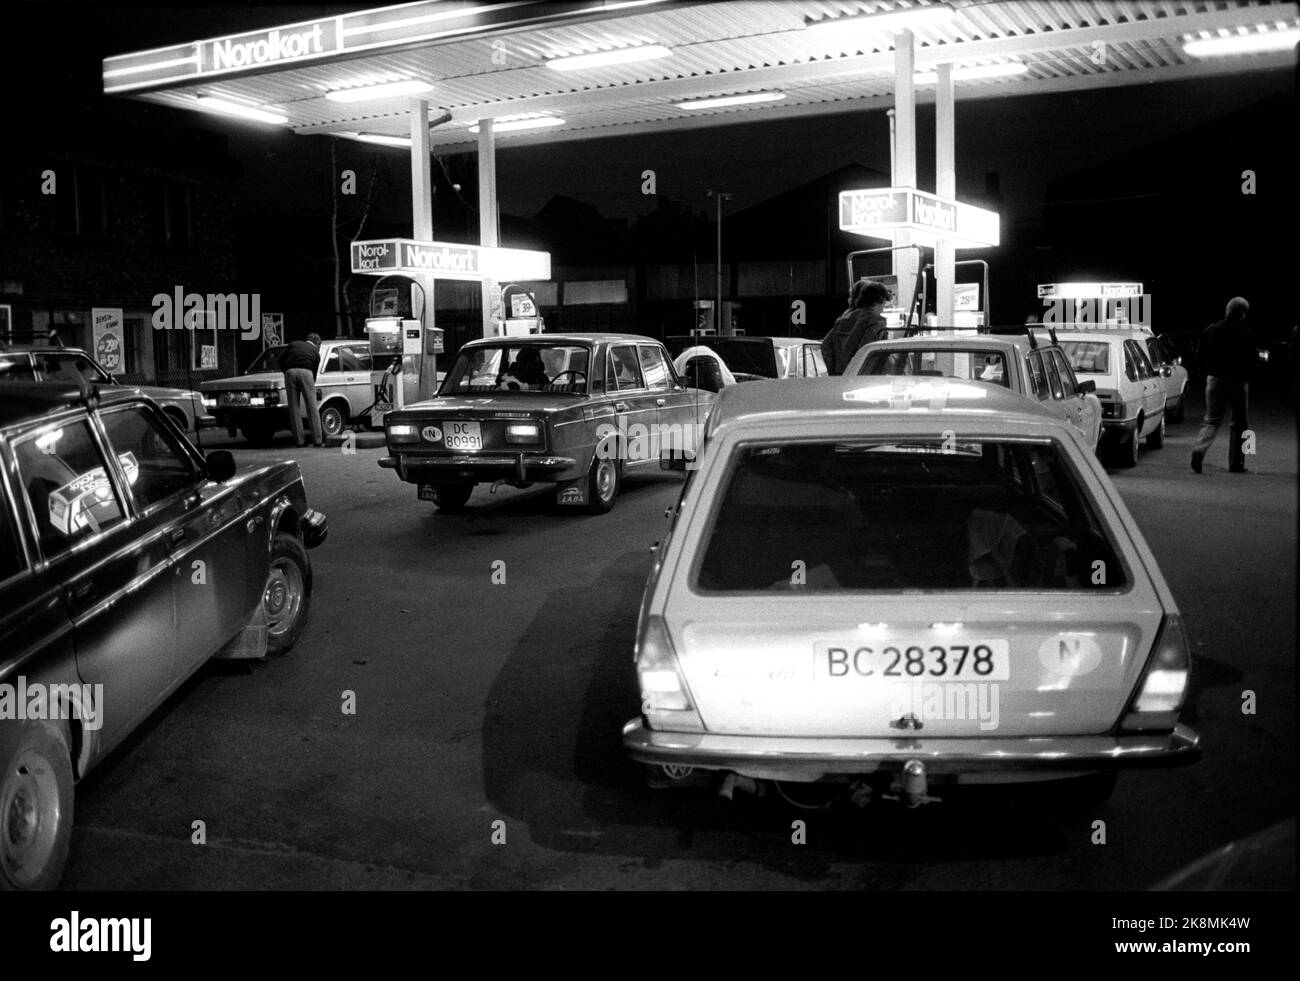 19820421 Strike per il trasporto. Lunghe code alle stazioni di servizio di Oslo nelle ore mattutine, ma non molto tempo prima che anche questa stazione finiva per esaurire la benzina. Foto Erik Thorberg / NTB F Foto Stock